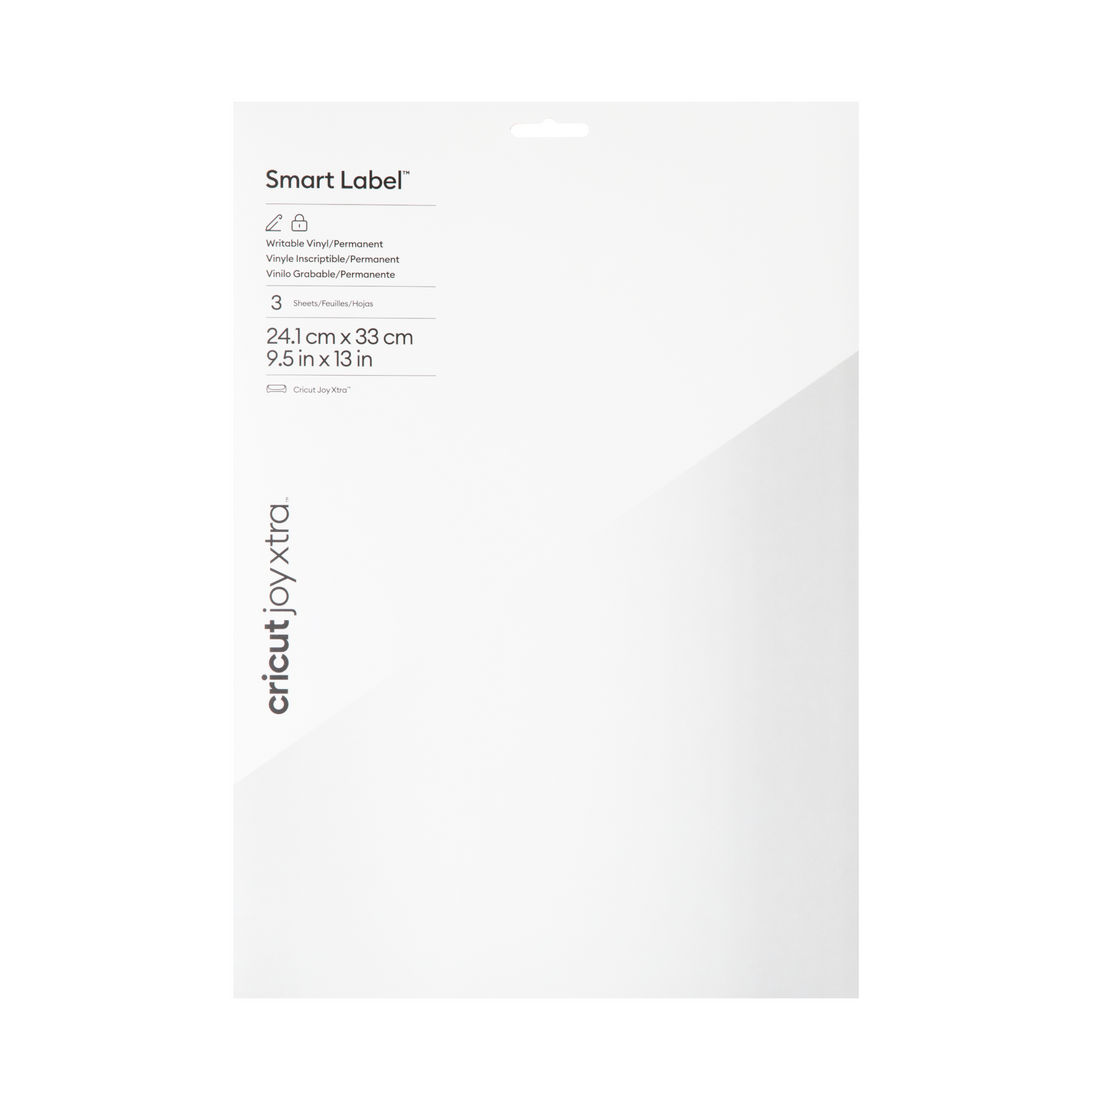 Cricut Joy Smart Label Writable Vinyl Transparent, Black, White Permanent  Bundle